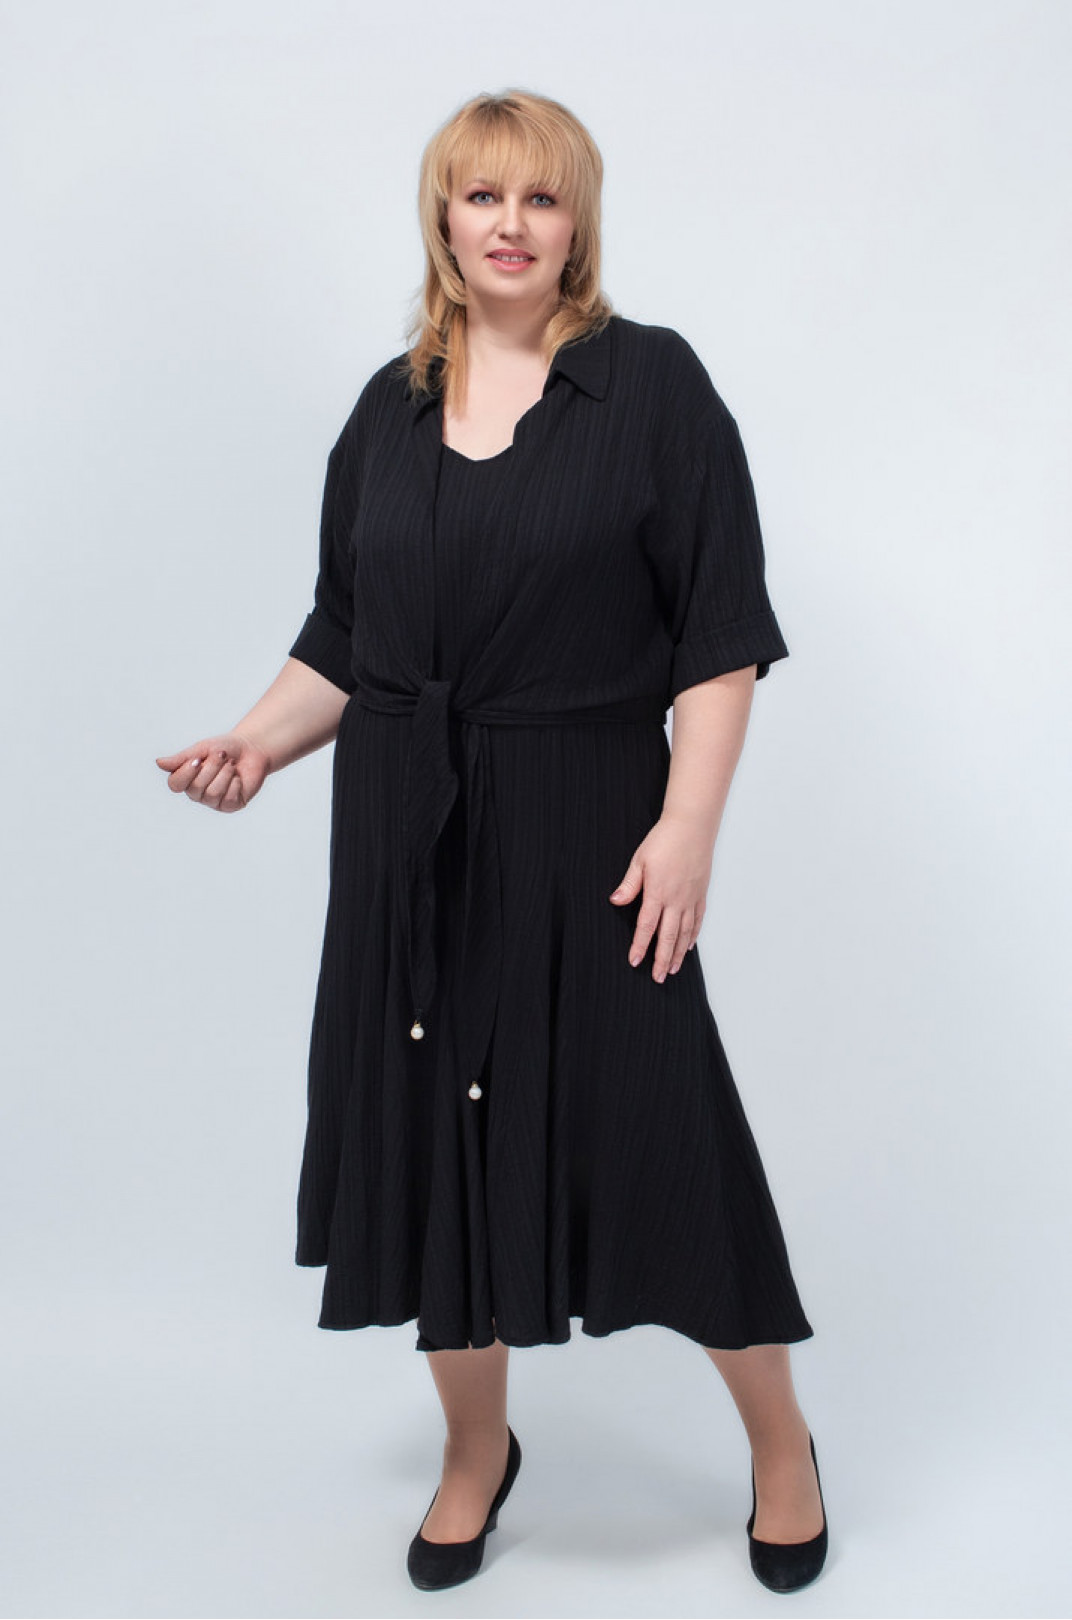 Сарафан-сукня міді з болеро чорного кольору батал